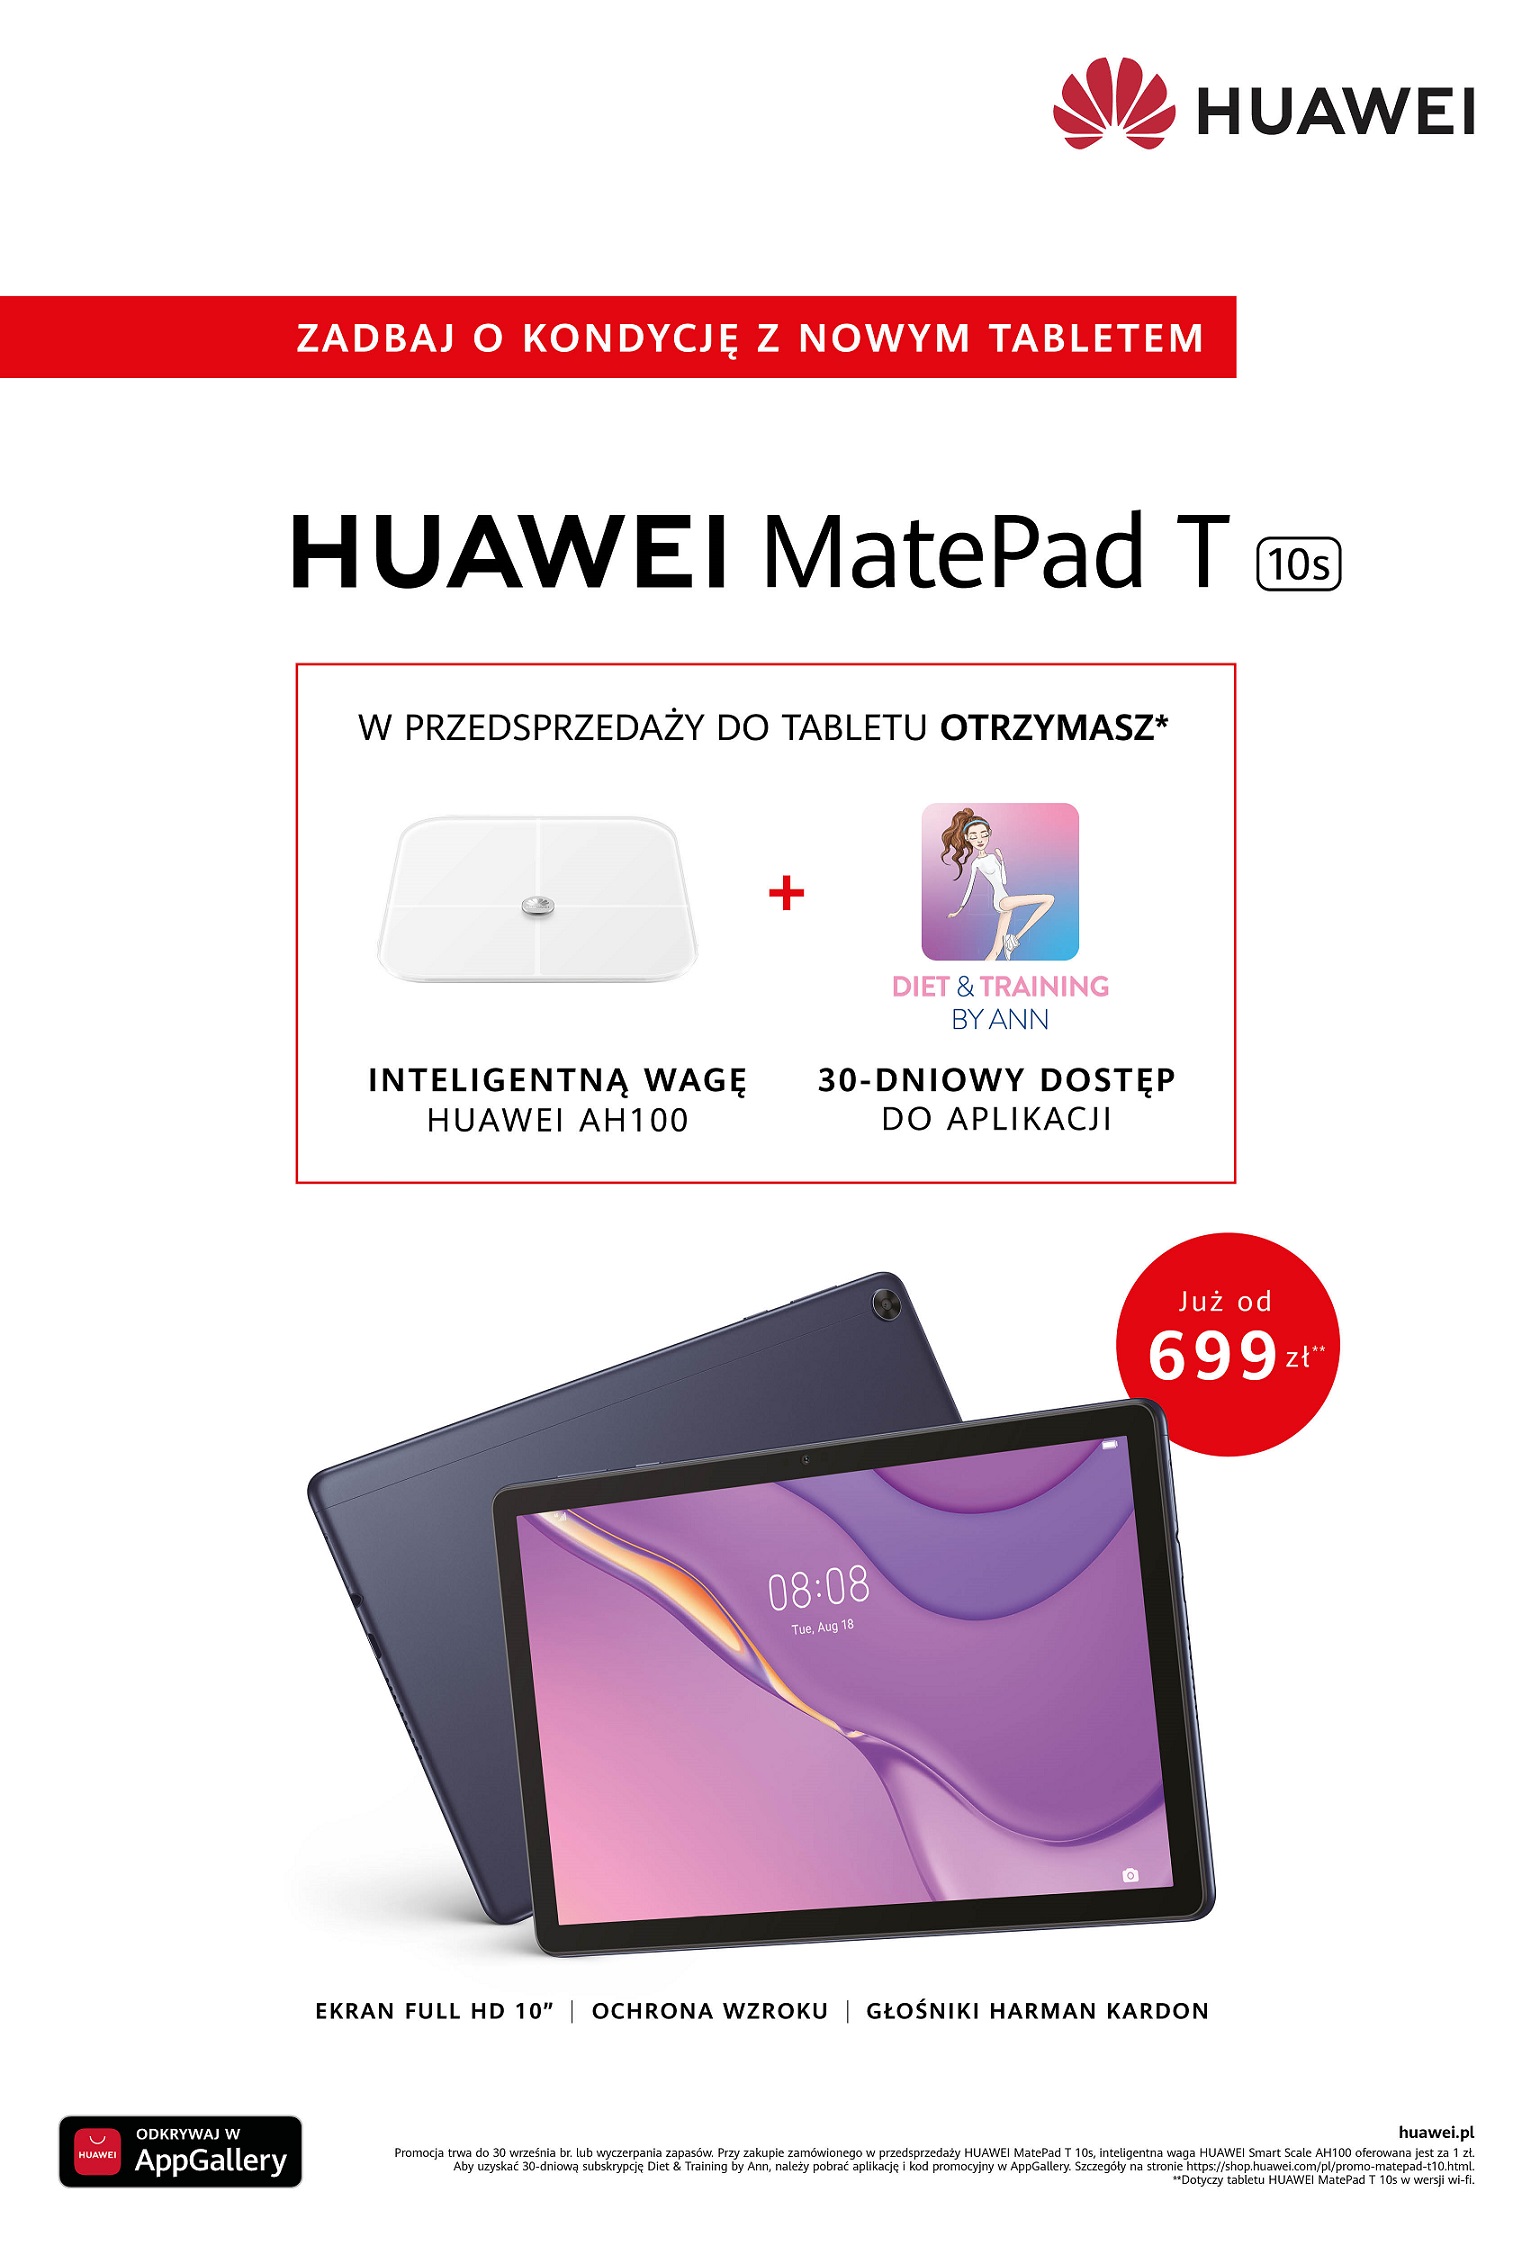 MatePad T10s oferta w przedsprzedaÅ¼y